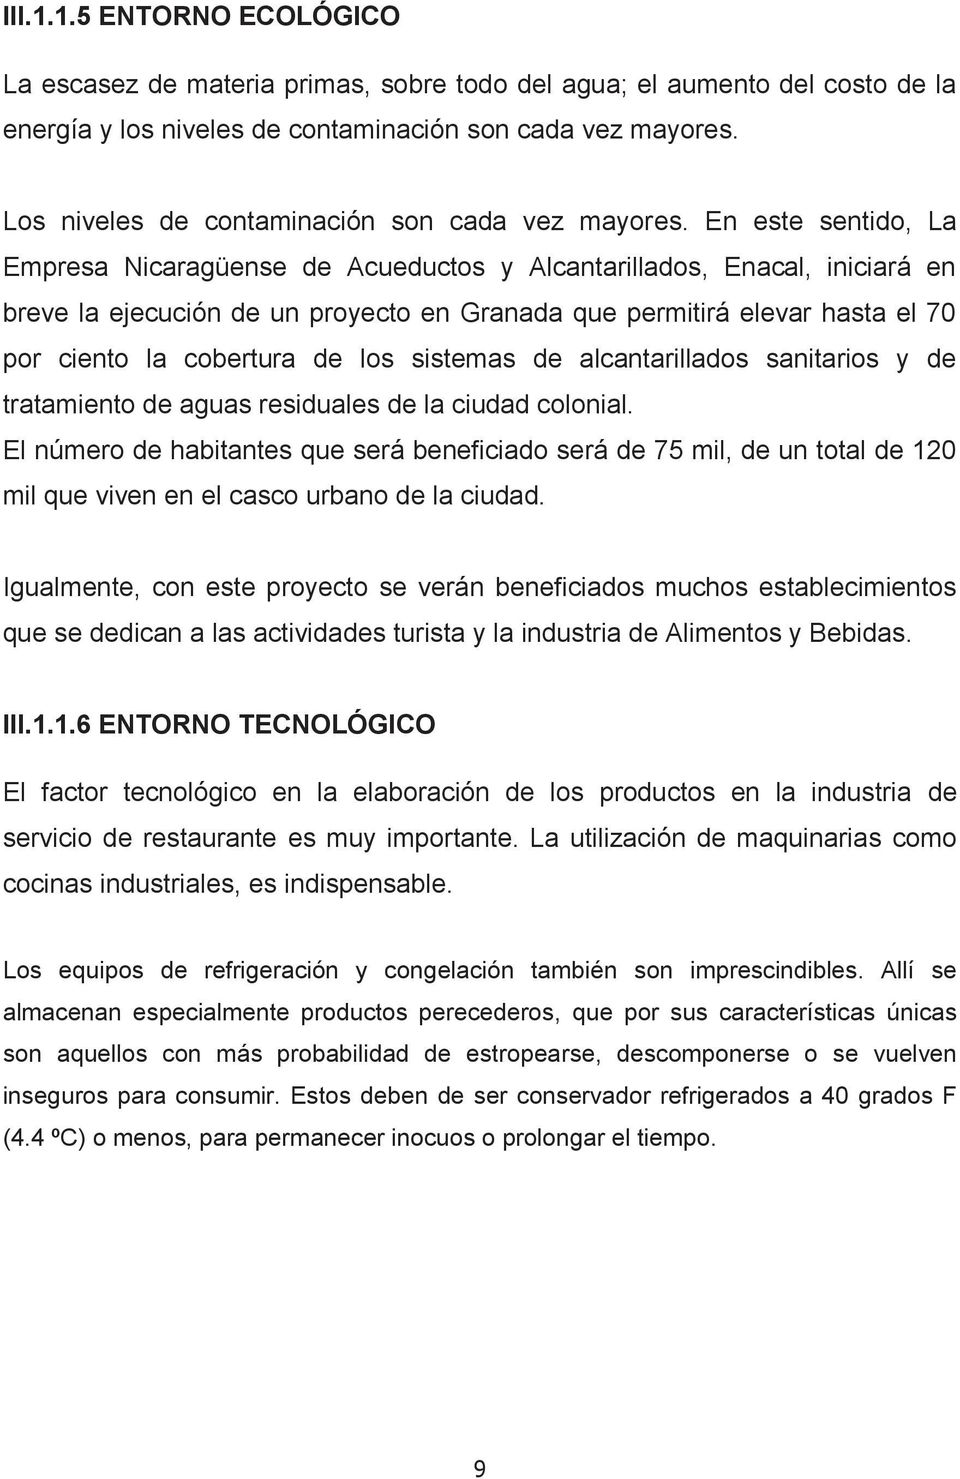 En este sentido, La Empresa Nicaragüense de Acueductos y Alcantarillados, Enacal, iniciará en breve la ejecución de un proyecto en Granada que permitirá elevar hasta el 70 por ciento la cobertura de